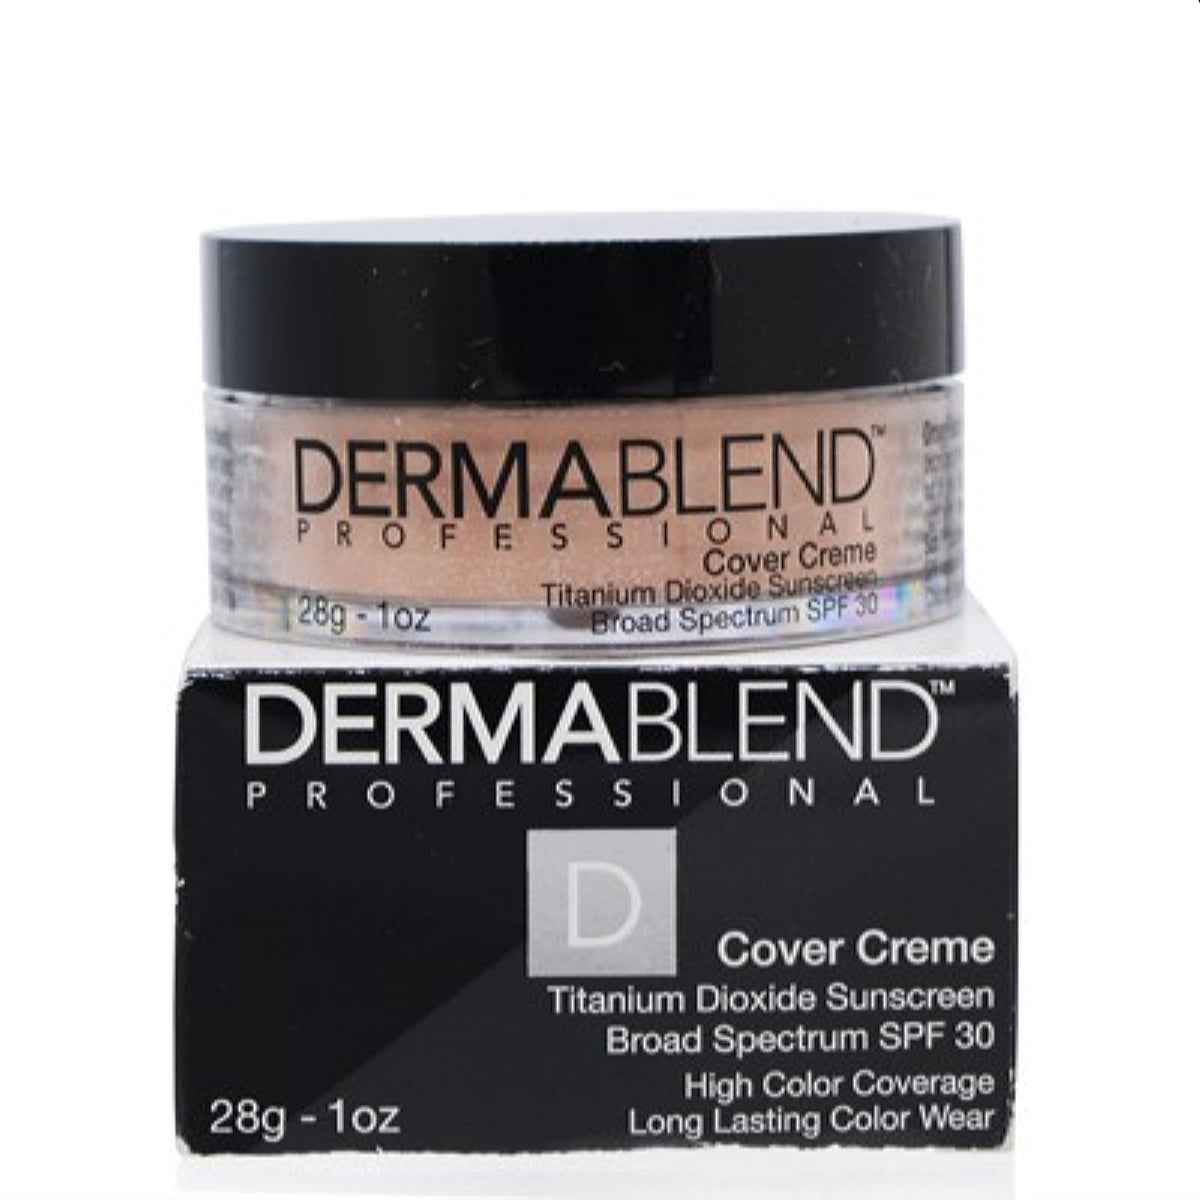 Dermablend Cover Creme Foundation Spf 30 (10C Rose Beige) 1.0 Oz (28 Ml)   